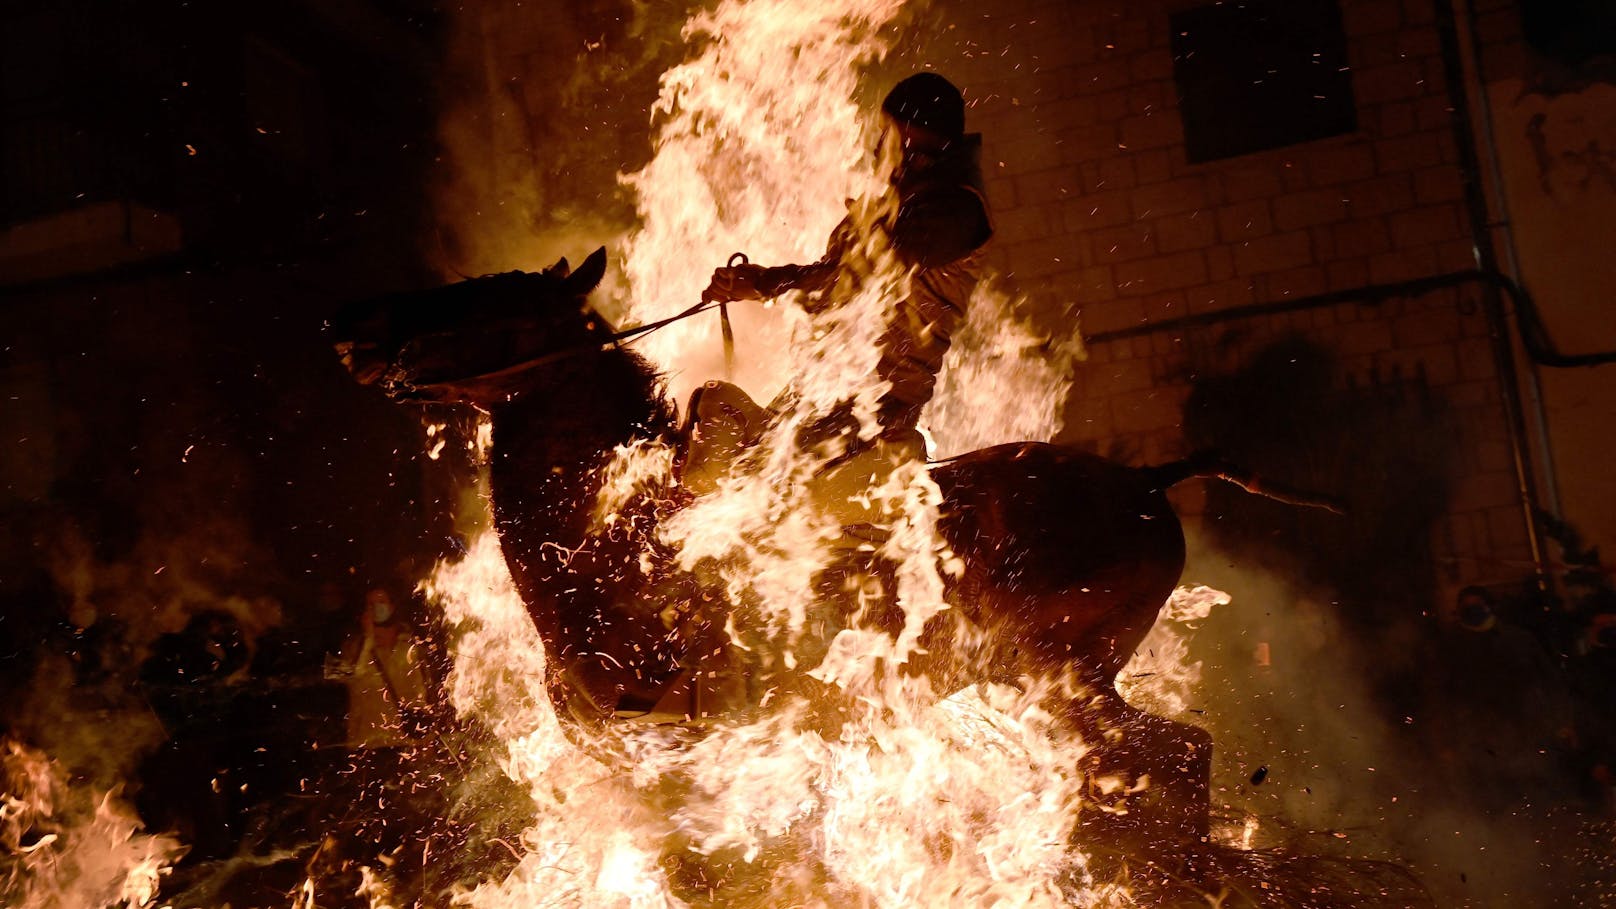 Für ein spanisches Brauchtum zu Ehren des Heiligen Antonius (Schutzpatron der Bauern und Nutztiere) müssen Pferde mit ihren Reitern durchs Feuer gehen. 